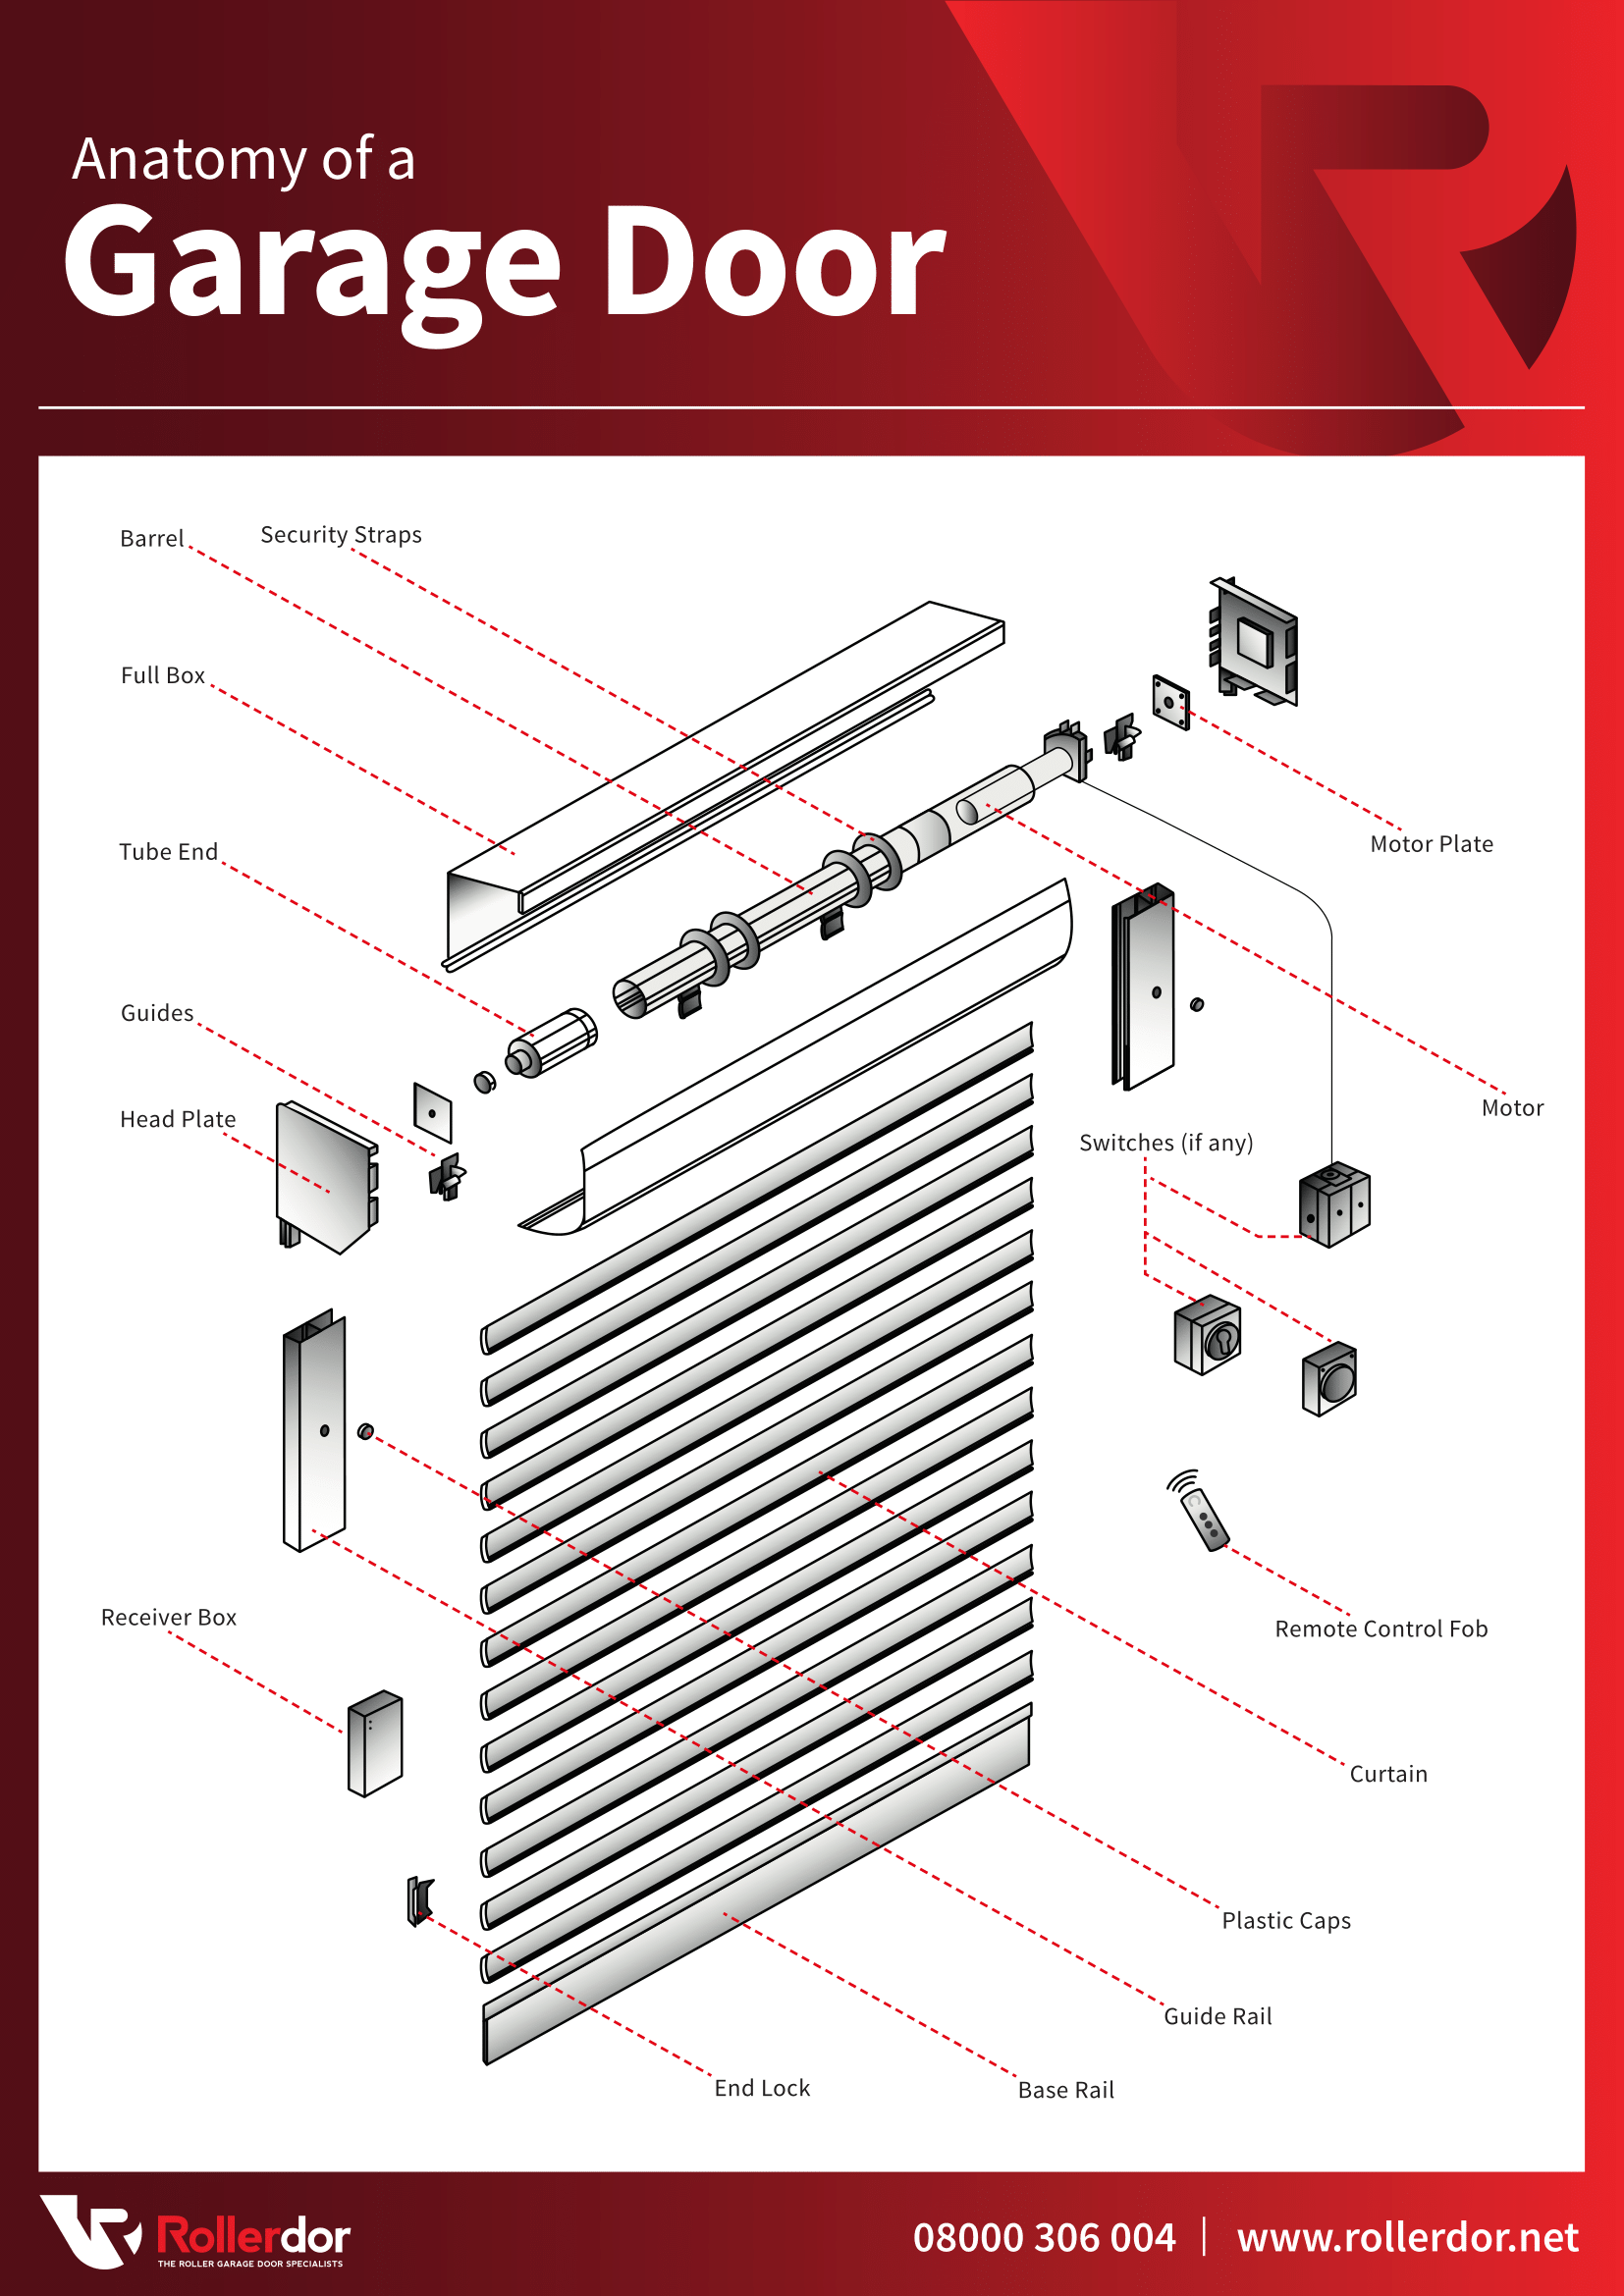 Anatomy of a Garage Door Infographic 